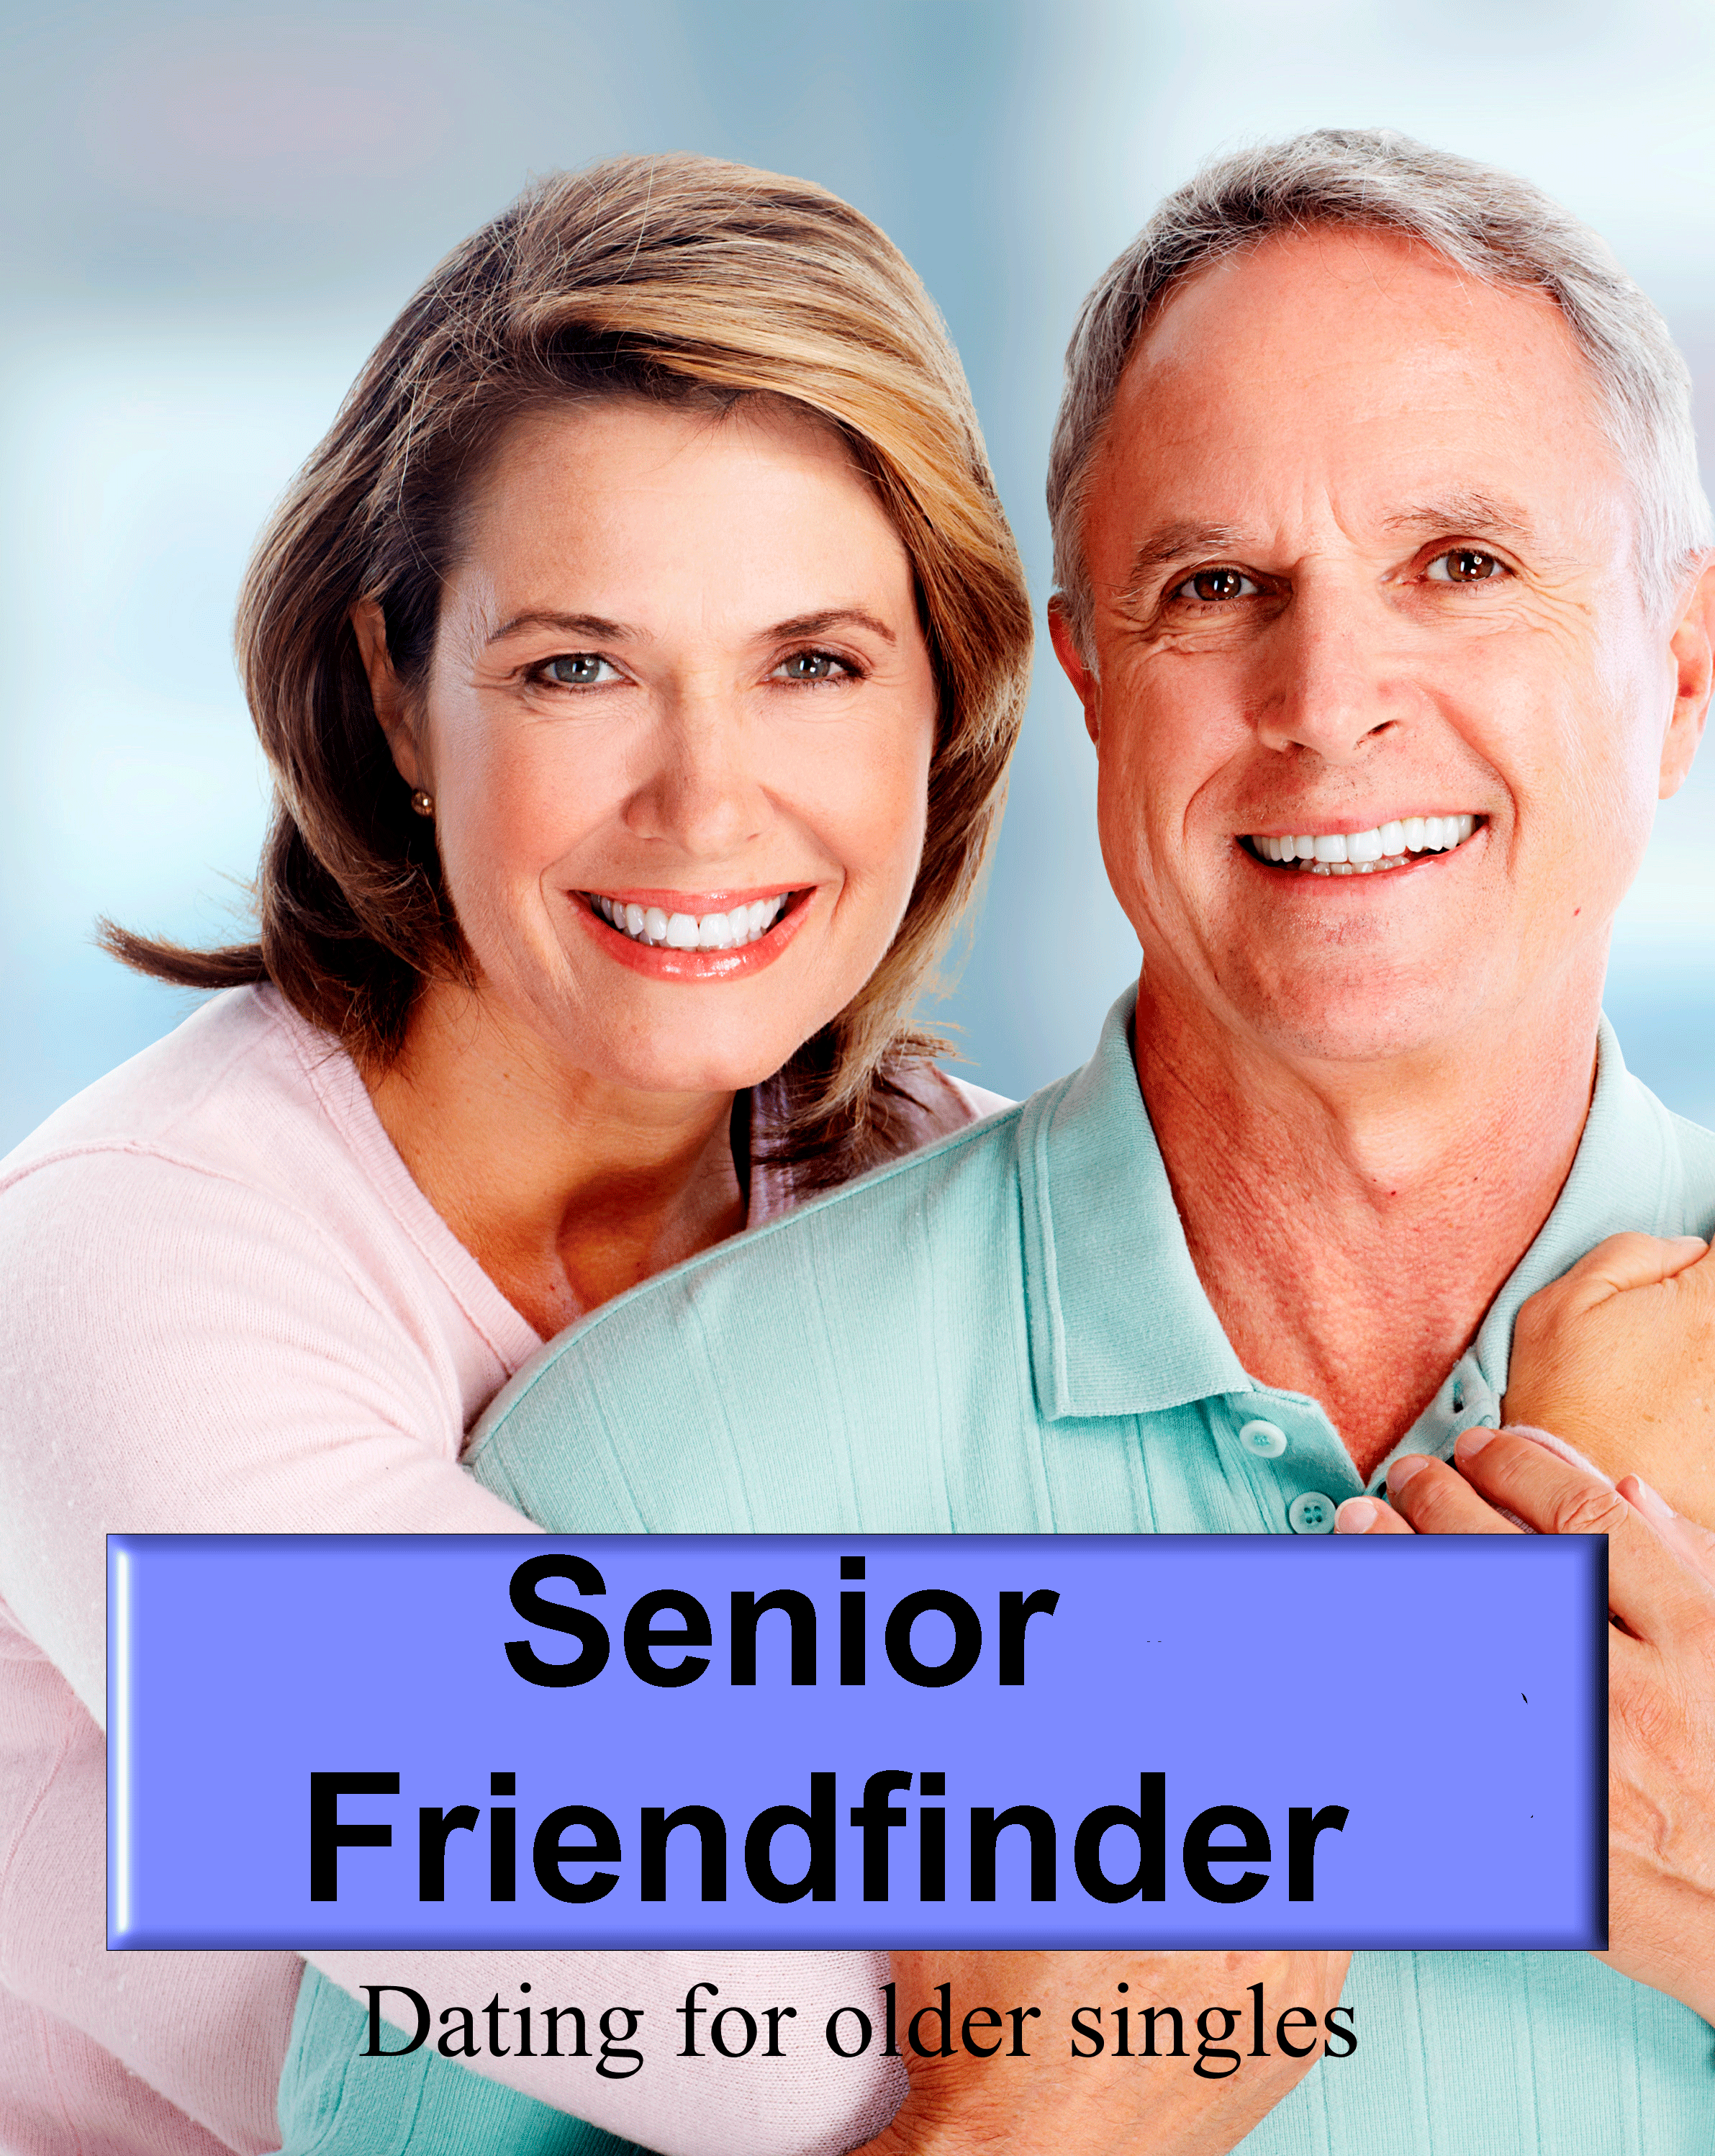 Senior Friend Finders